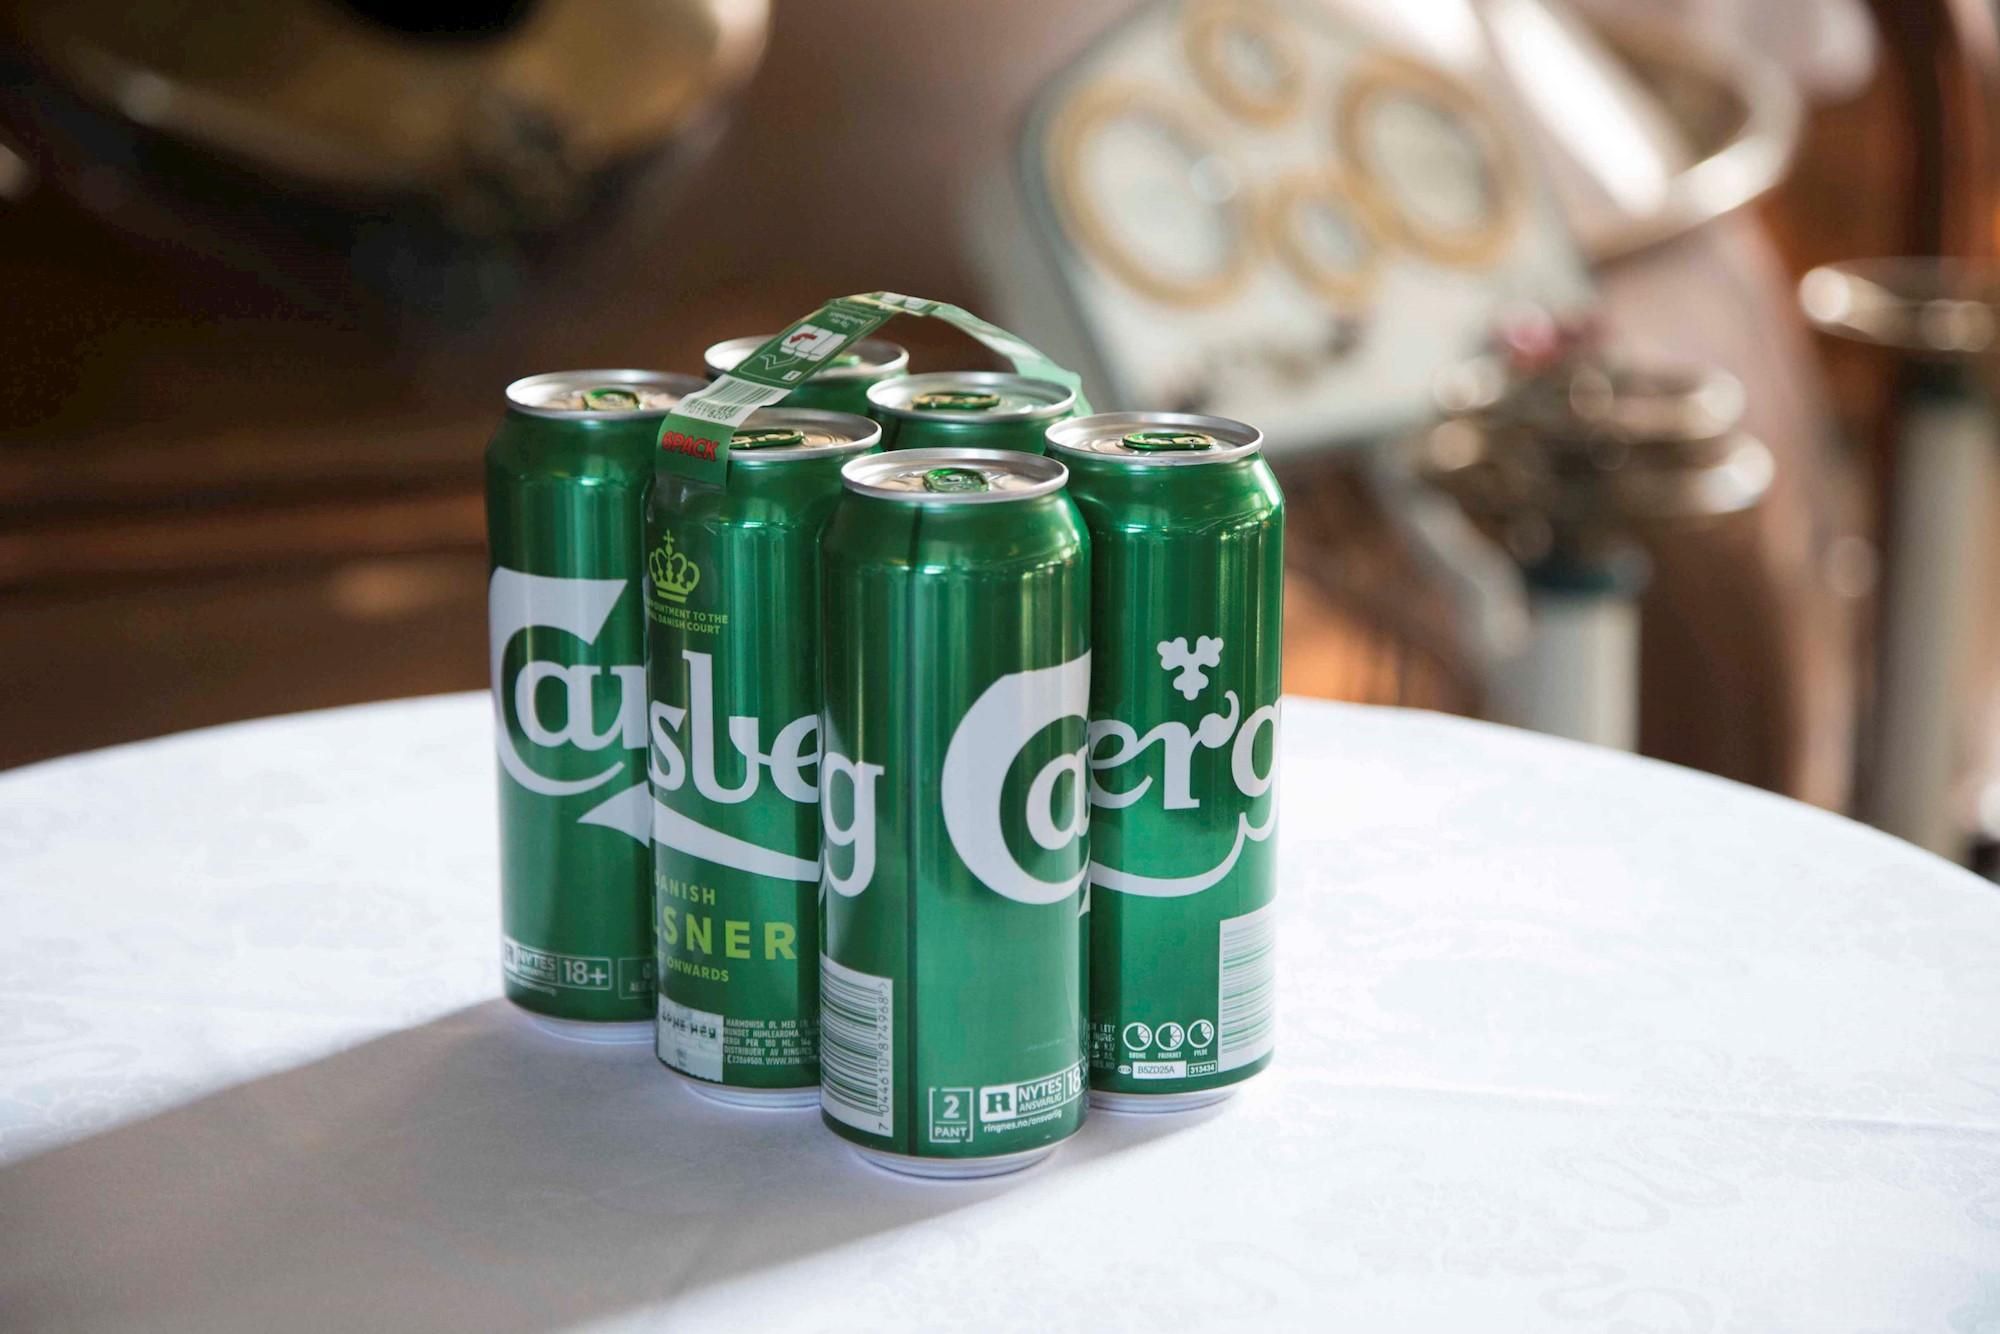 Остались без пива: Carlsberg покидает российский рынок вслед за Heineken - Бизнес